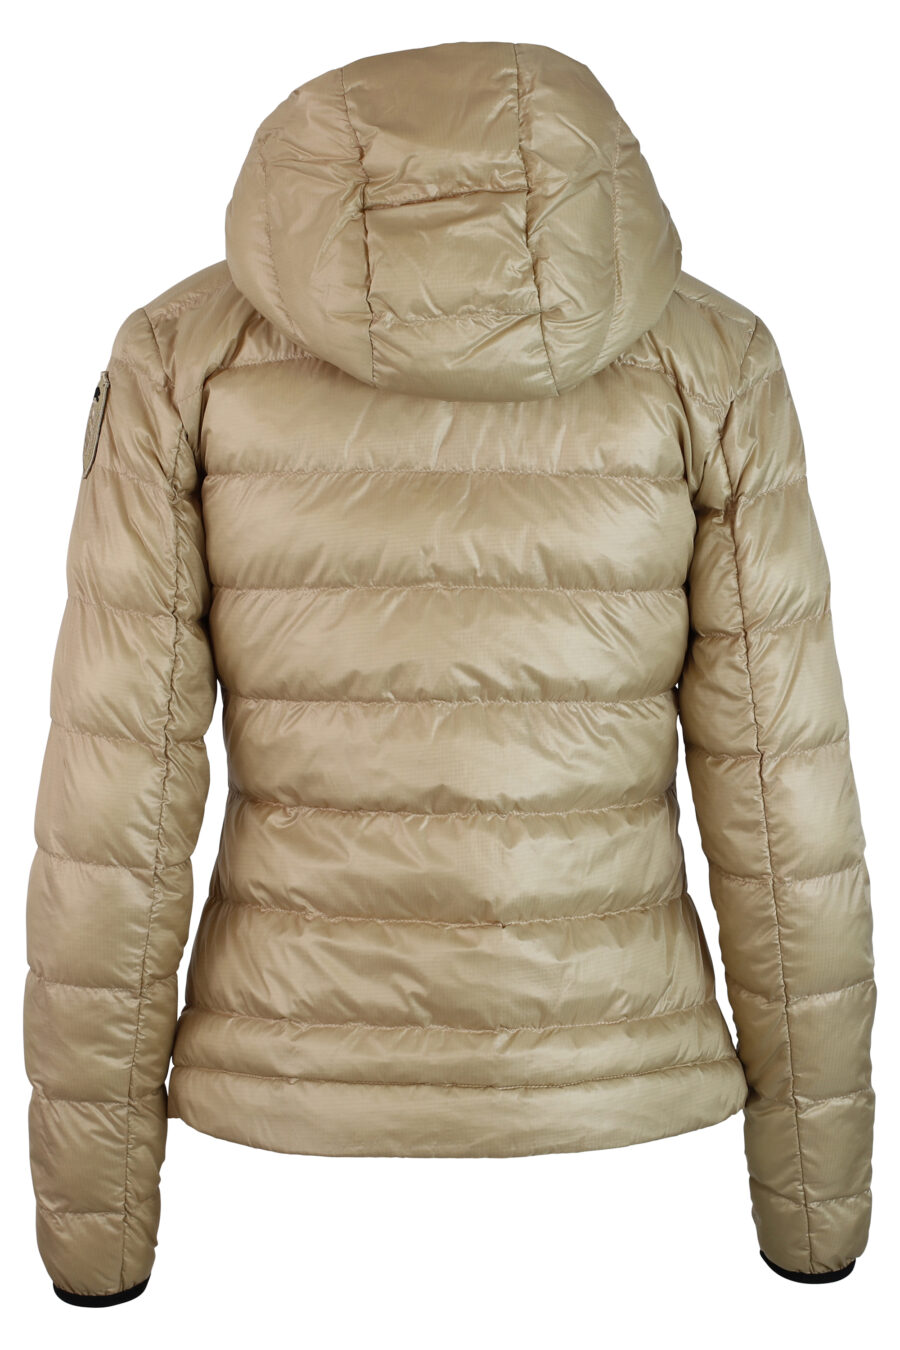 Beigefarbene kurze Jacke mit Kapuze und geraden Linien - IMG 0222